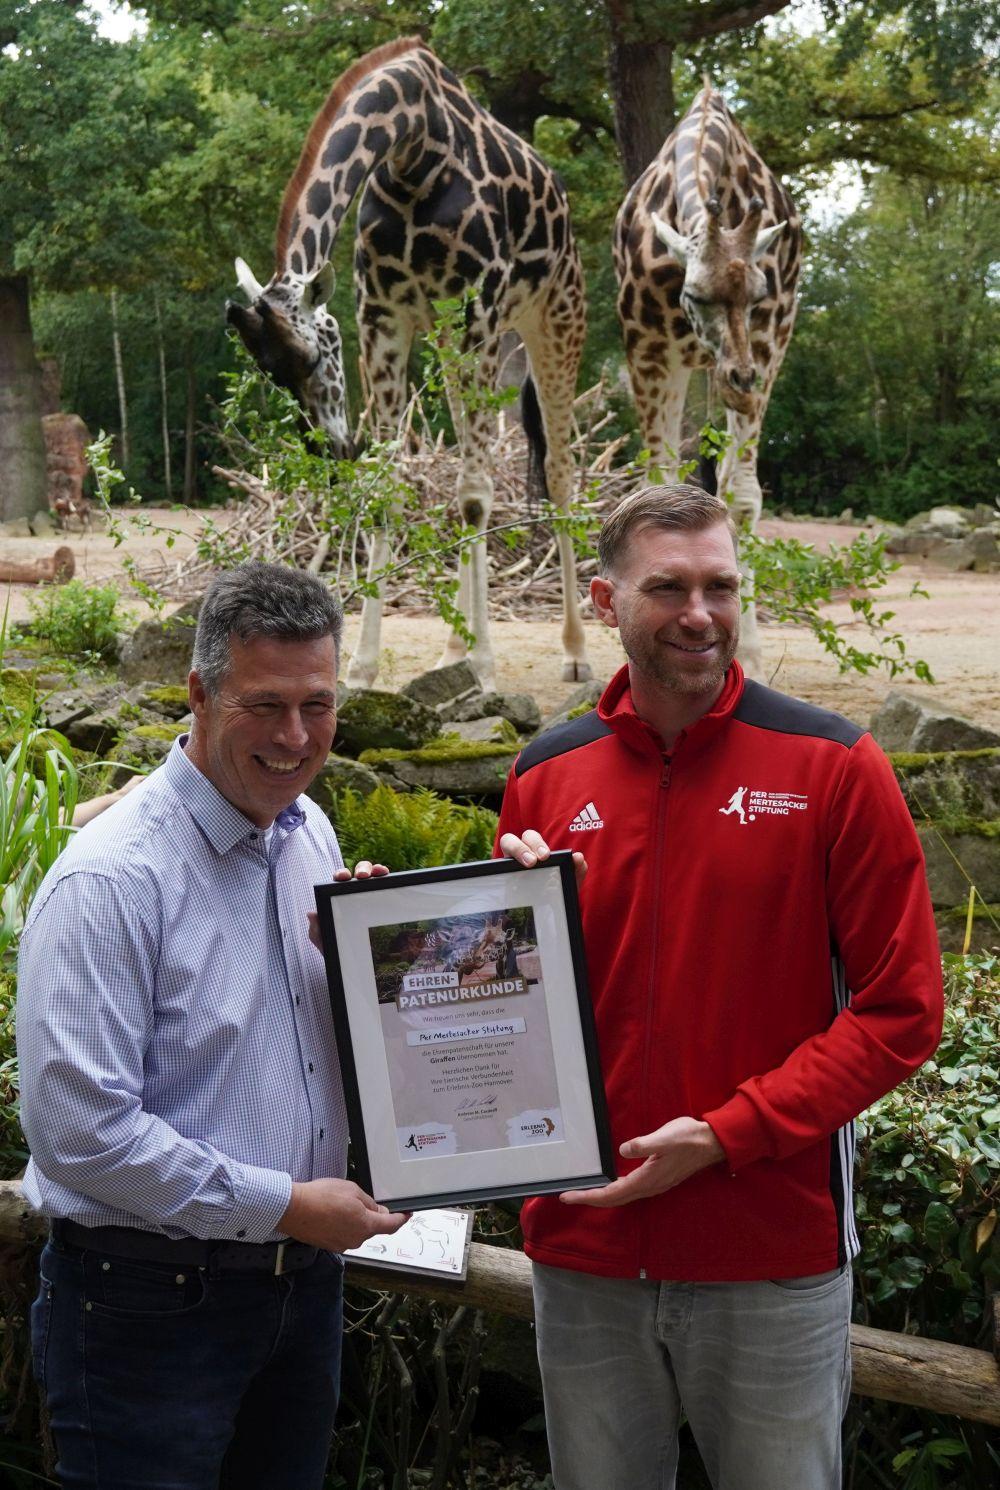 Zoo-Geschäftsführer Andreas M. Casdorff überreichte Per Mertesacker die Urkunde für die Giraffen-Ehrenpatenschaft